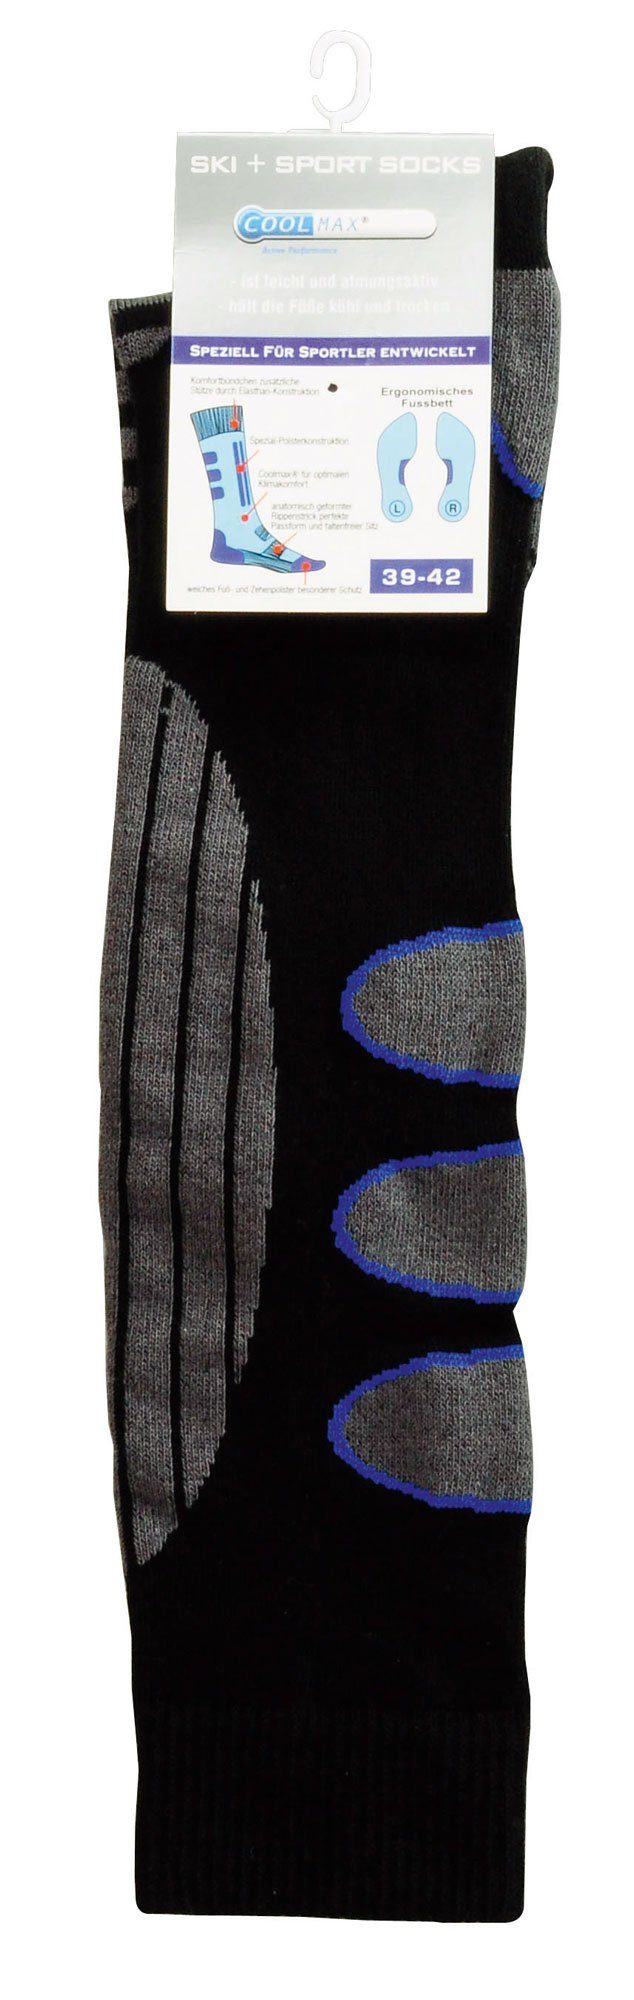 Schwarz-Blau mit Coolmax PistenSauser Snowboard-Socken Skisocken Spezialpolsterung 2 Paar Skisocken